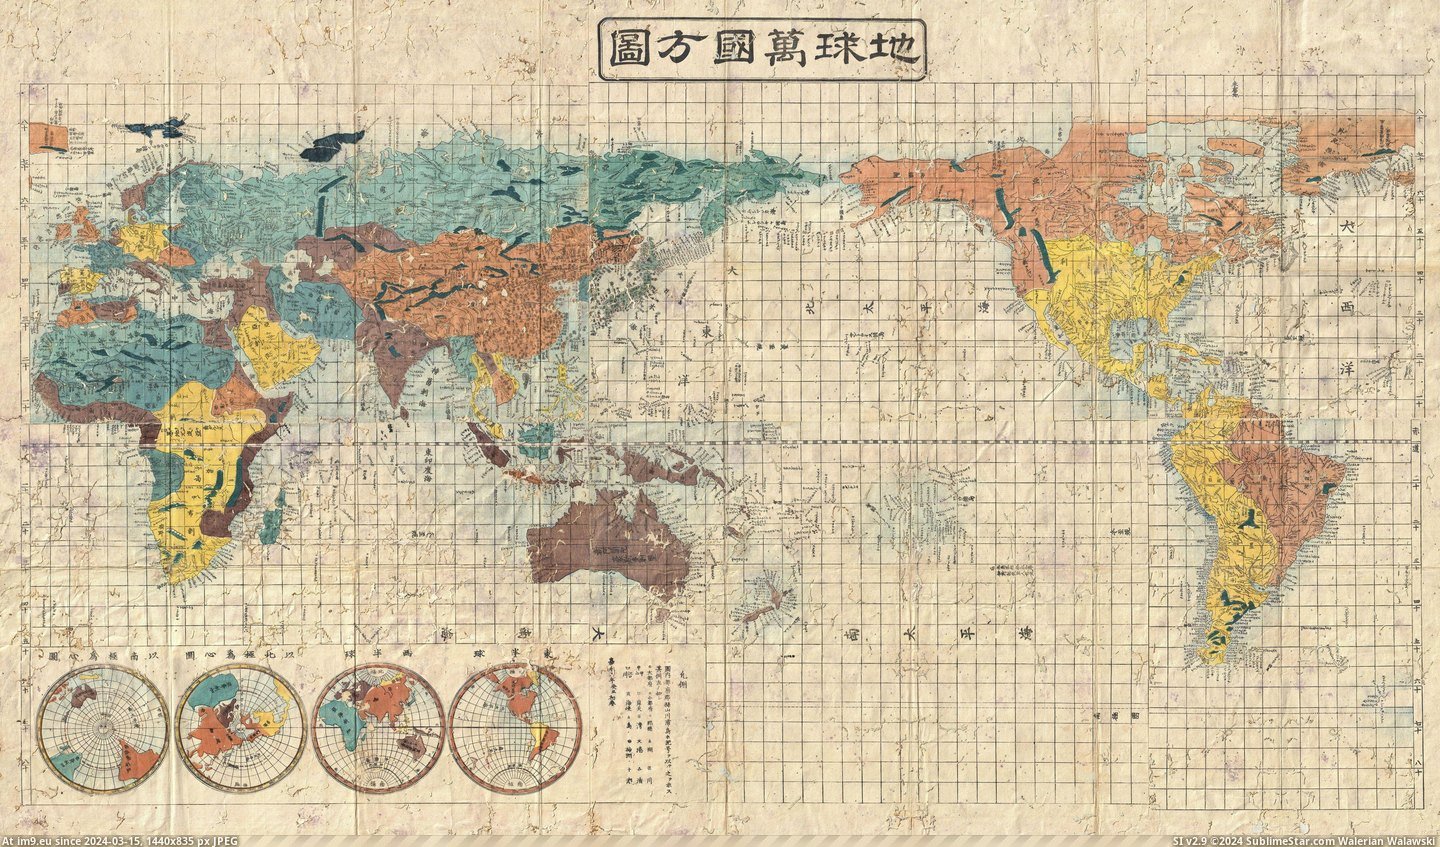 #Japanese #Map #World [Mapporn] Japanese World Map (1853) [5400×3143] Pic. (Bild von album My r/MAPS favs))